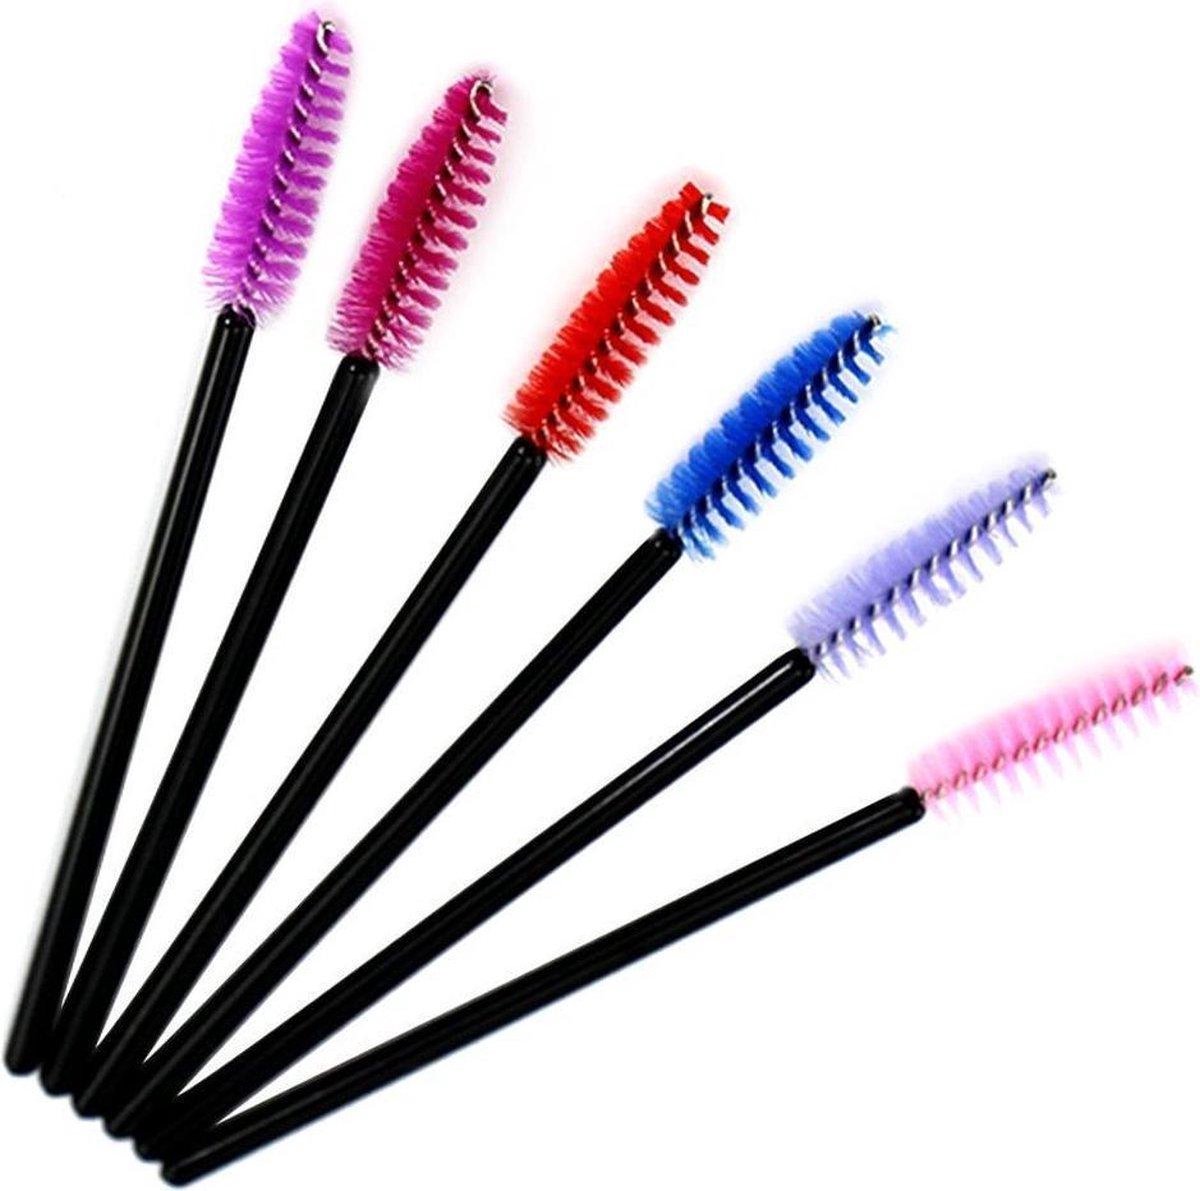 Wimperborstel voor Wimper Extensions - Mascara brush - Wenkbrauw Kwast- (set van 8 verschillende kleuren) - IRSA